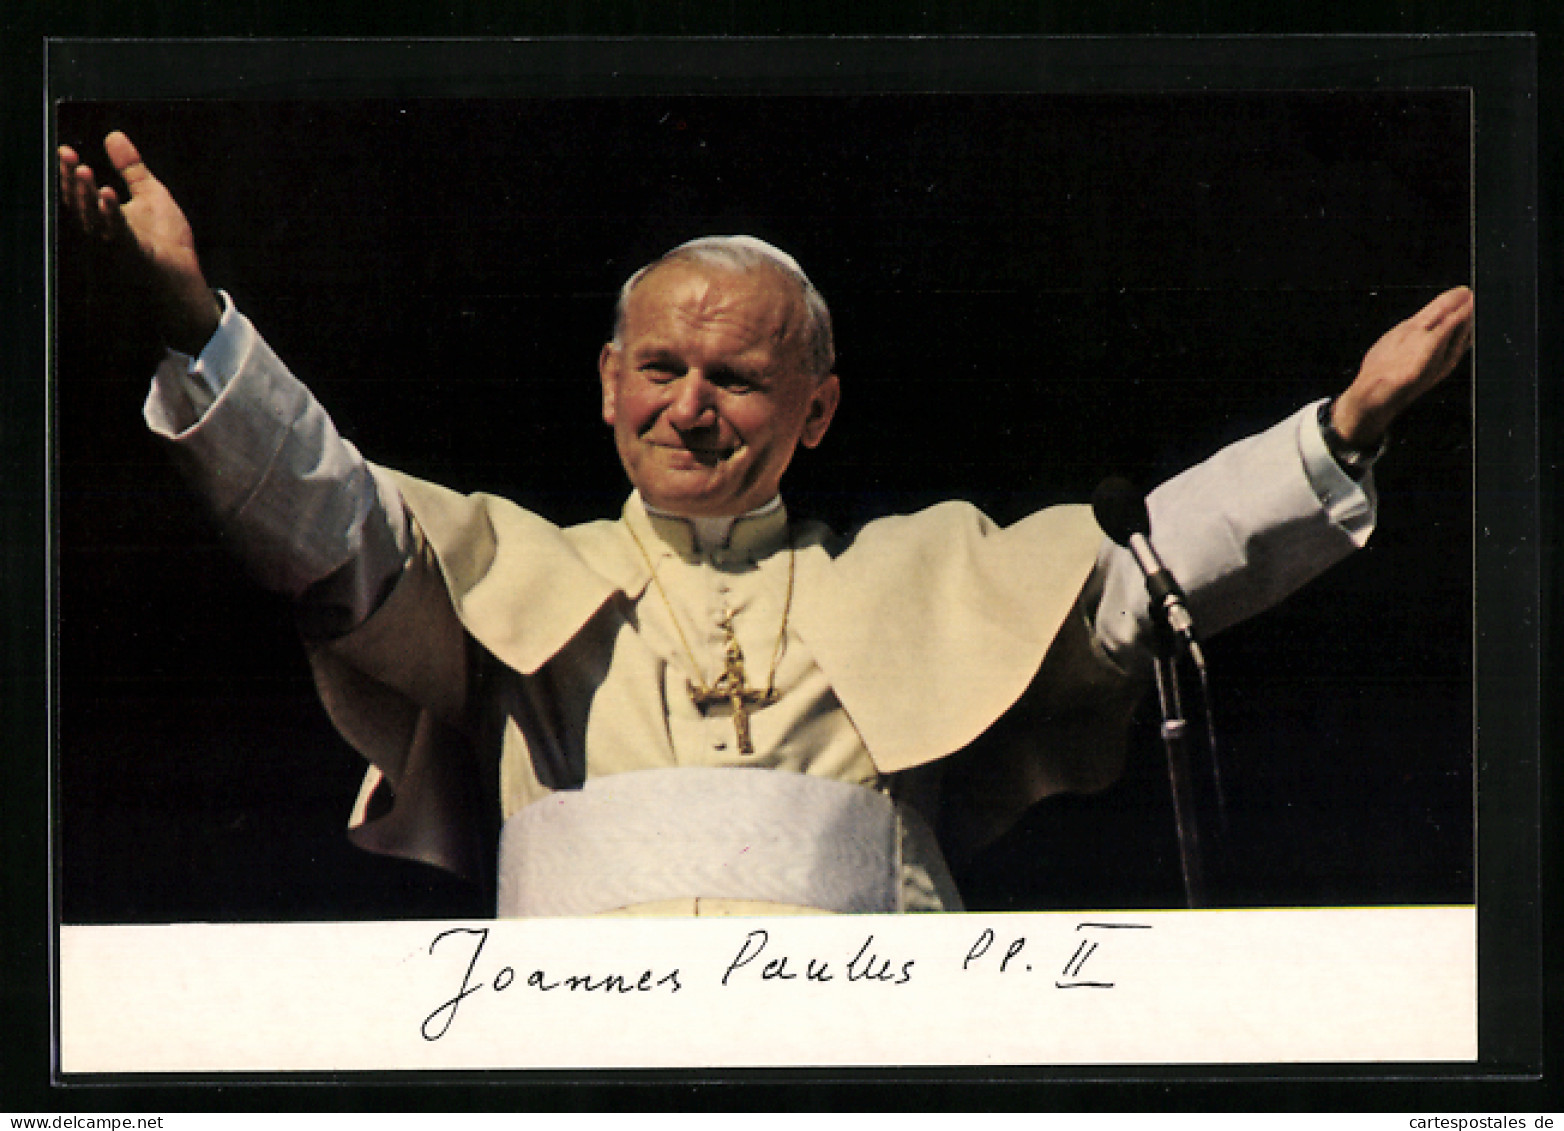 AK Porträt Von Papst Johannes Paul II.  - Pausen